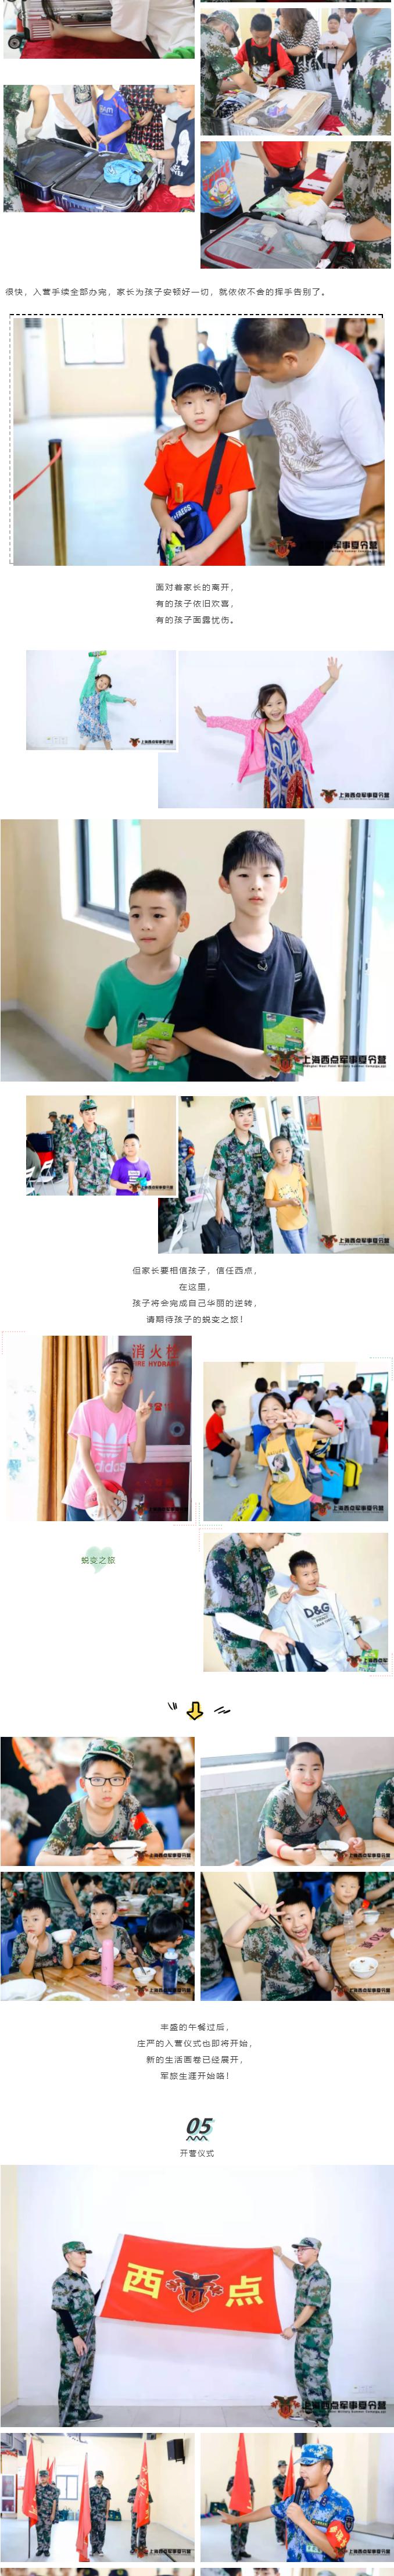 2019上海西点军事夏令营第三期火爆开营